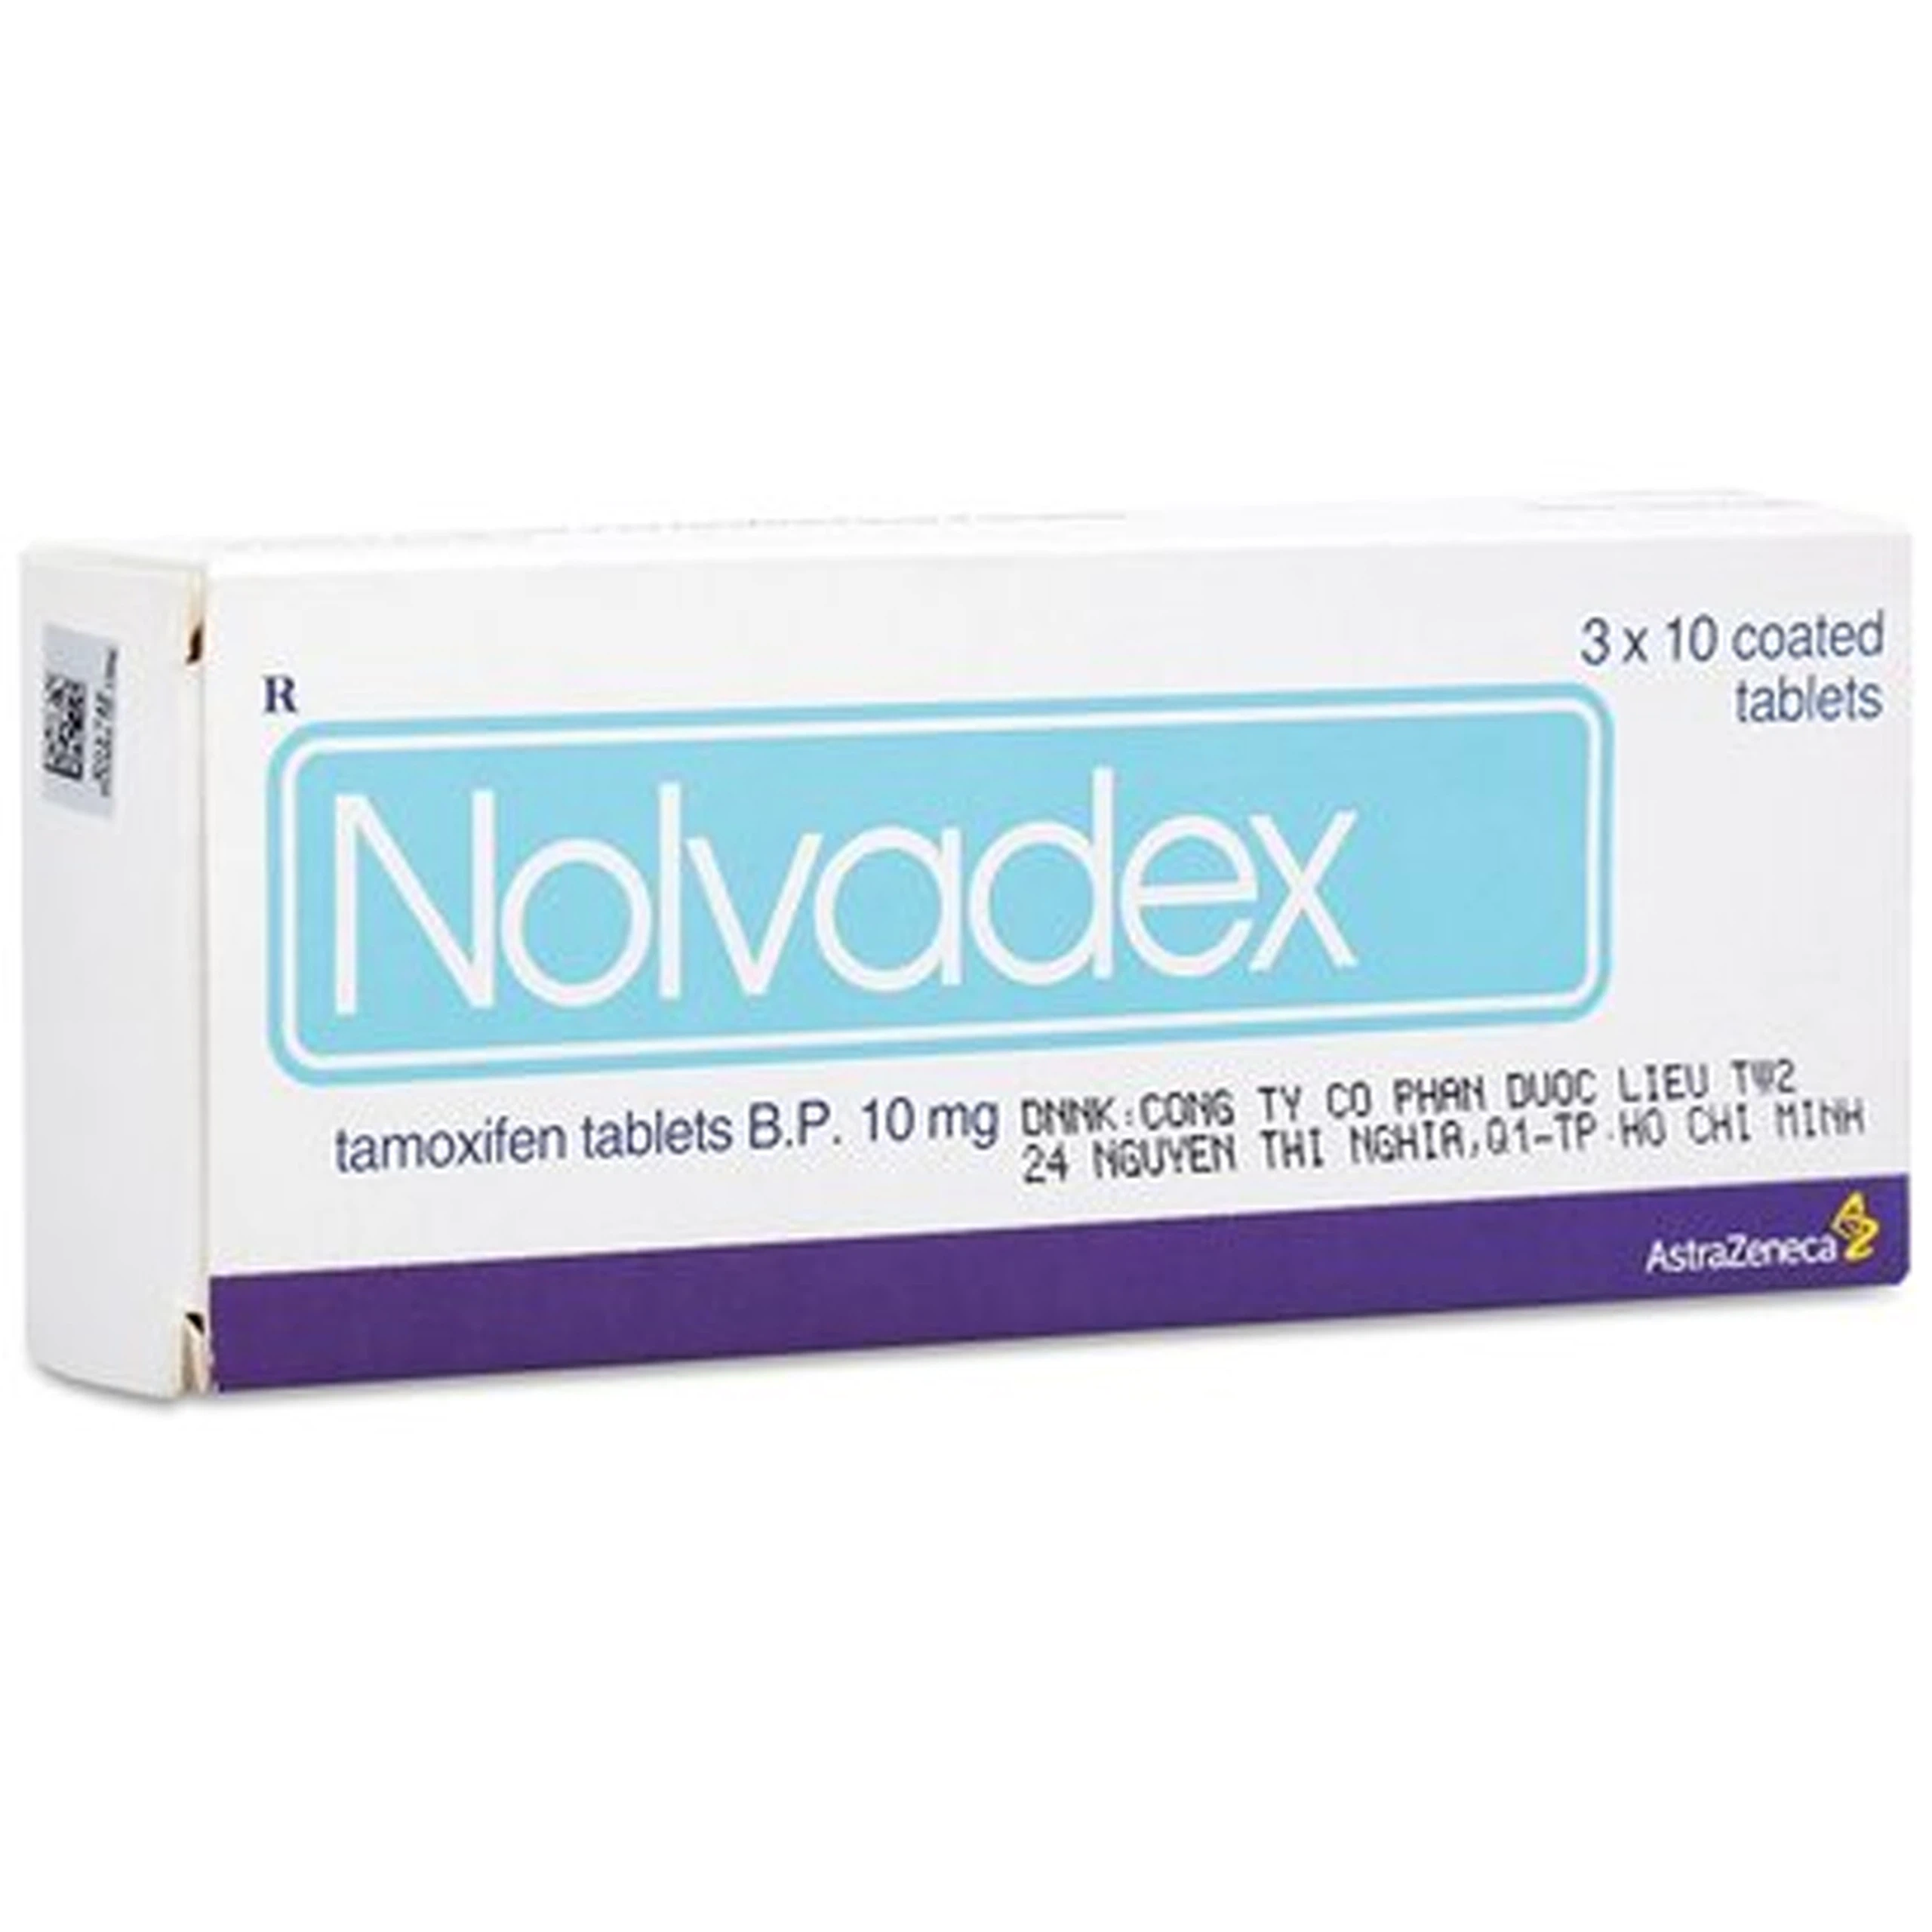 Viên nén Nolvadex 10mg AstraZeneca điều trị ung thư vú (3 vỉ x 10 viên)